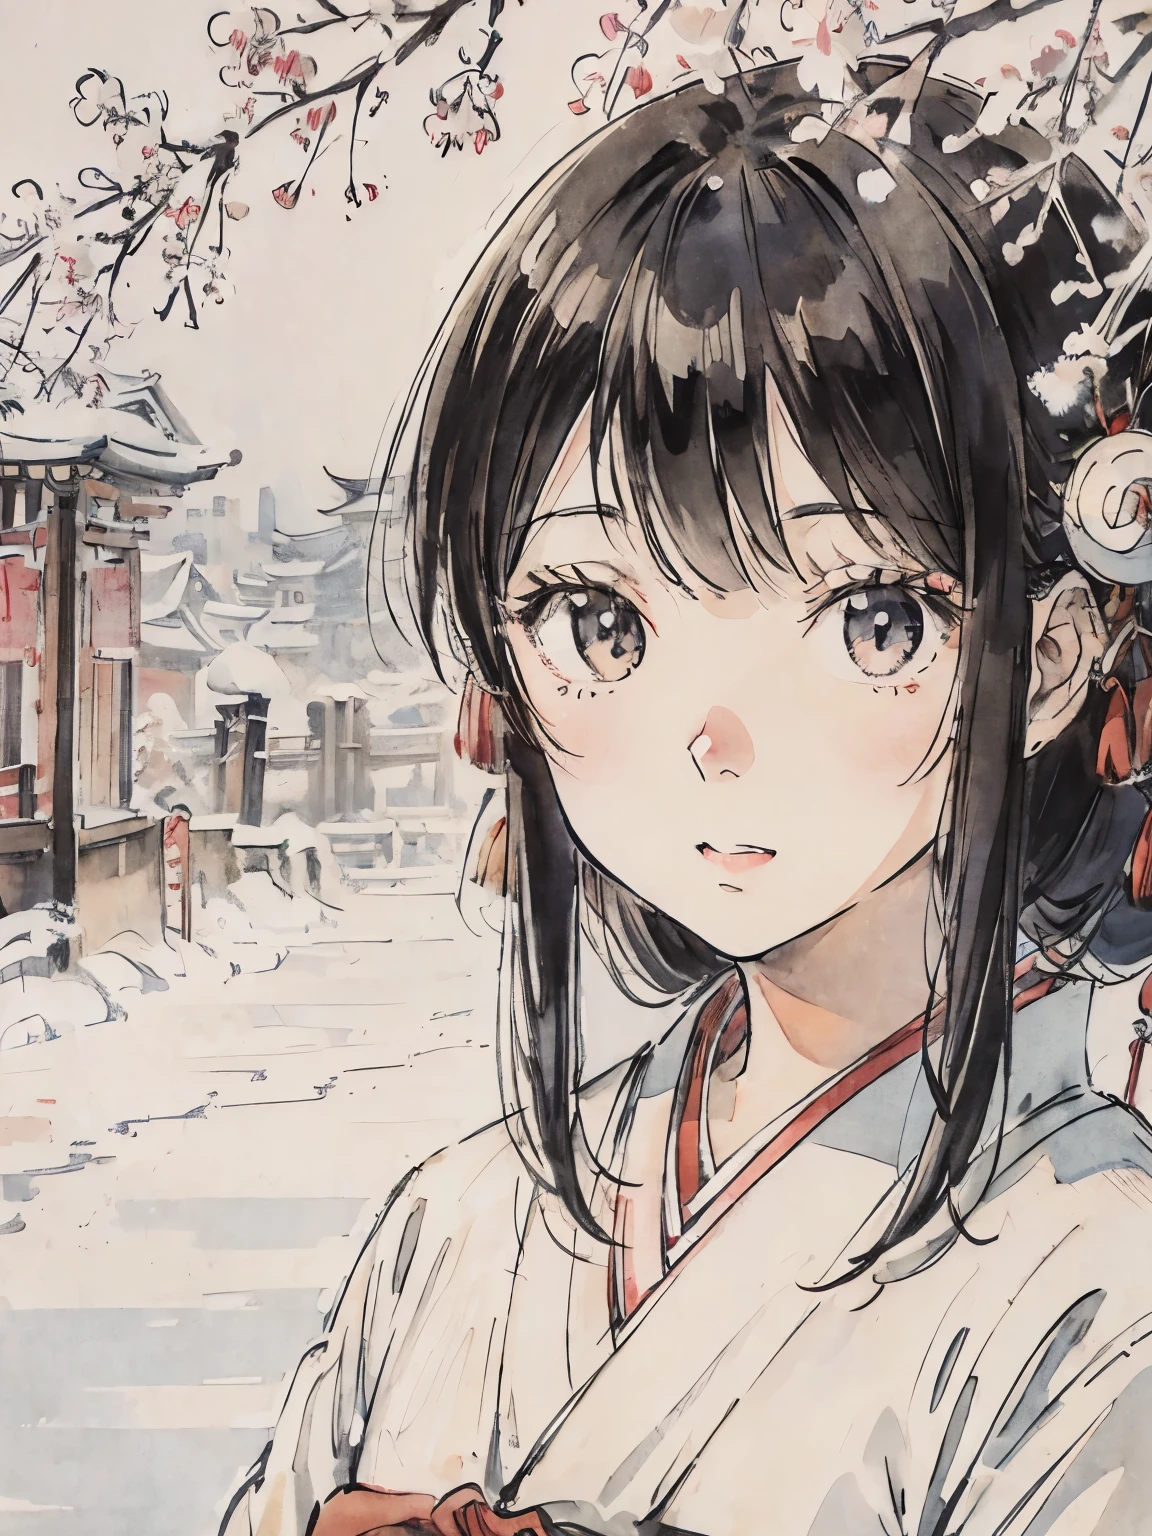 Una chica con kimono en un pueblo nevado.、Paisaje blanco puro、Asakusa、pelo negro、pintura de estilo japonés、El centro de Kioto、primer plano de la cara